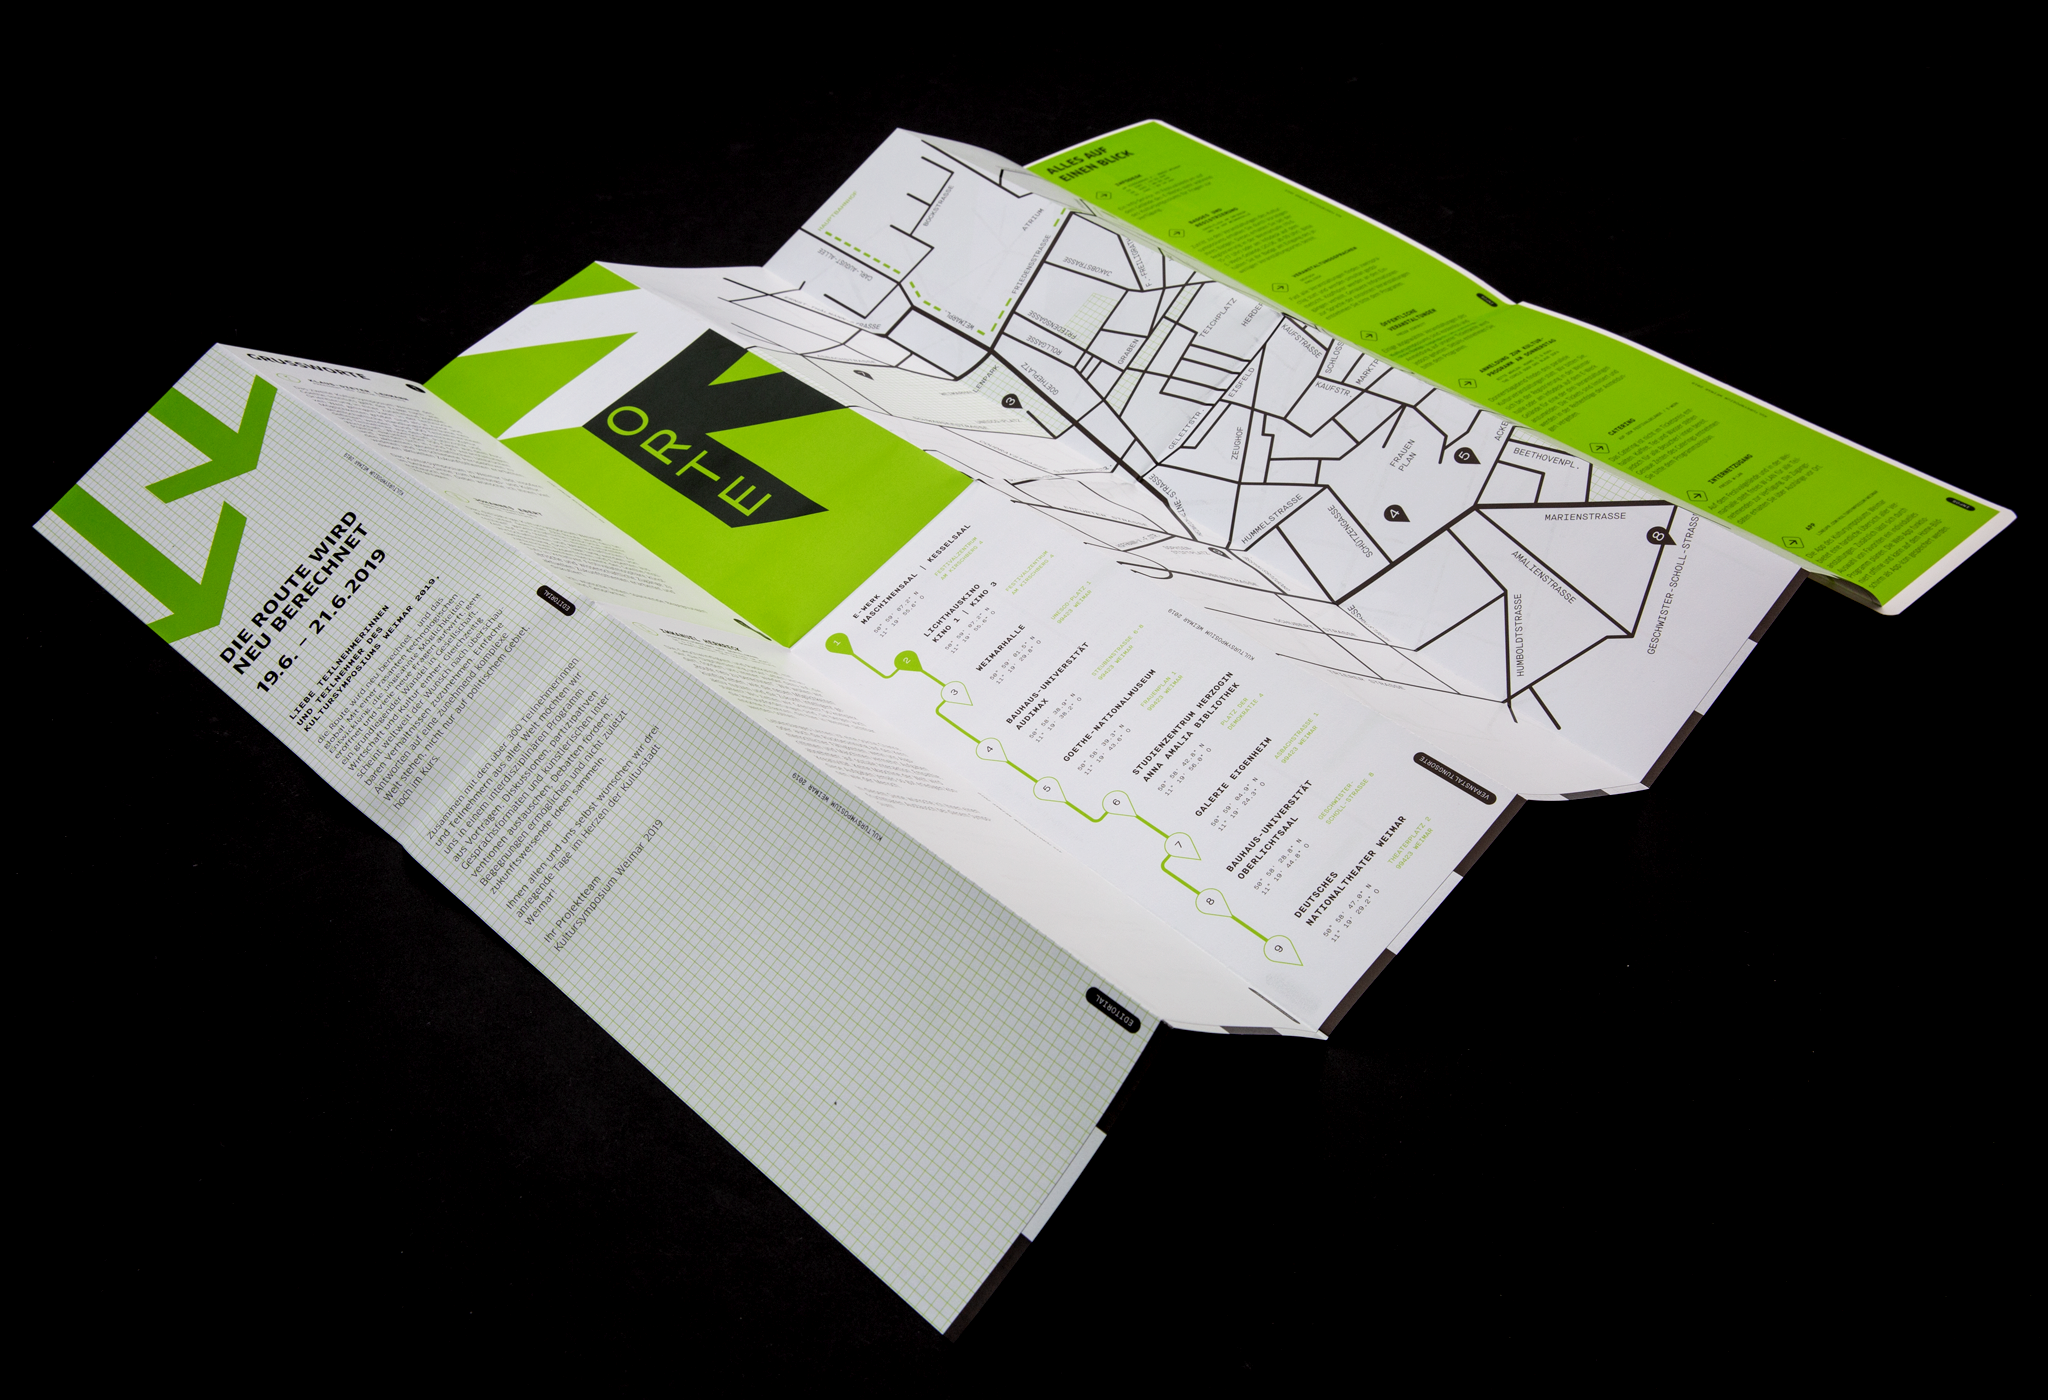 Grafisch gestaltete offene Stadtkarte / Graphically designed open city map